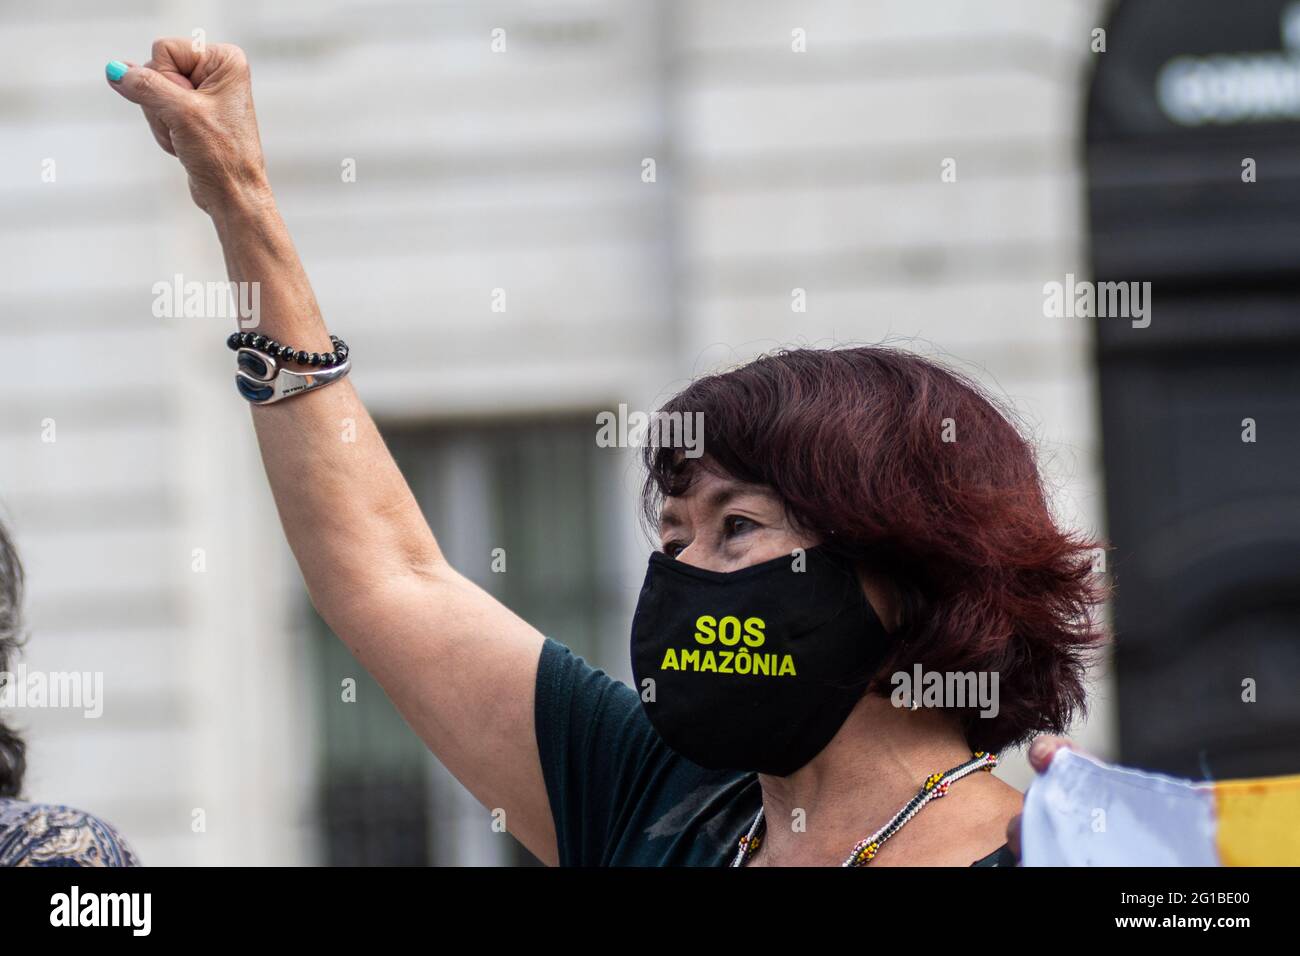 Madrid, Spanien. Juni 2021. Eine Frau, die ihre Faust hebt und eine Maske gegen die Verschlechterung des Amazonas trägt, während eines Protestes gegen Rassismus als Teil der sozialen Bewegung Black Lives Matter im Zusammenhang mit dem Tod des afroamerikanischen Bürgers George Floyd in den Vereinigten Staaten. Quelle: Marcos del Mazo/Alamy Live News Stockfoto